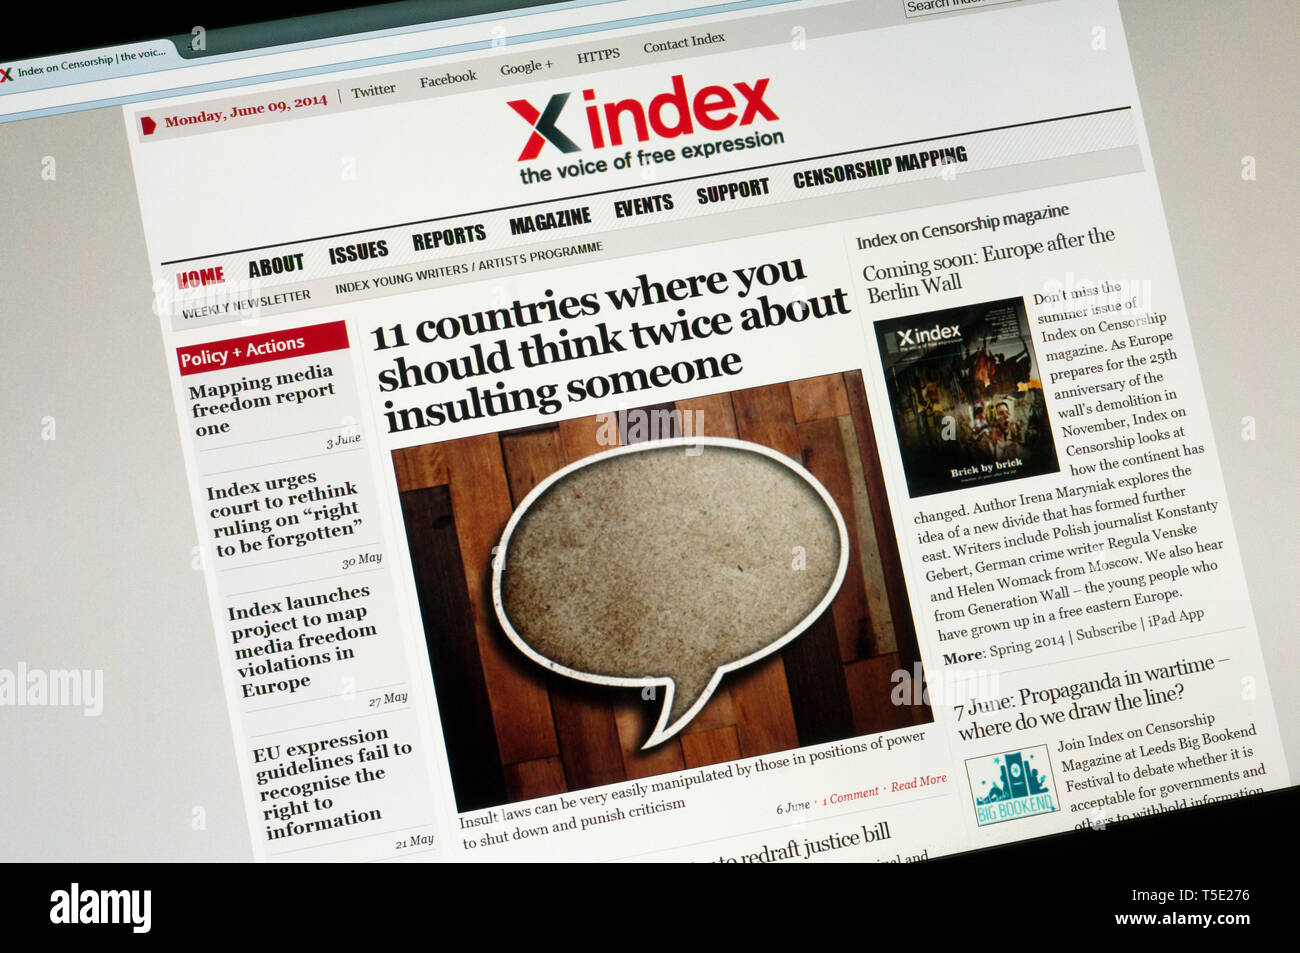 Xindex, die Website der Kampagne publishing Organisation Index auf Zensur. Stockfoto